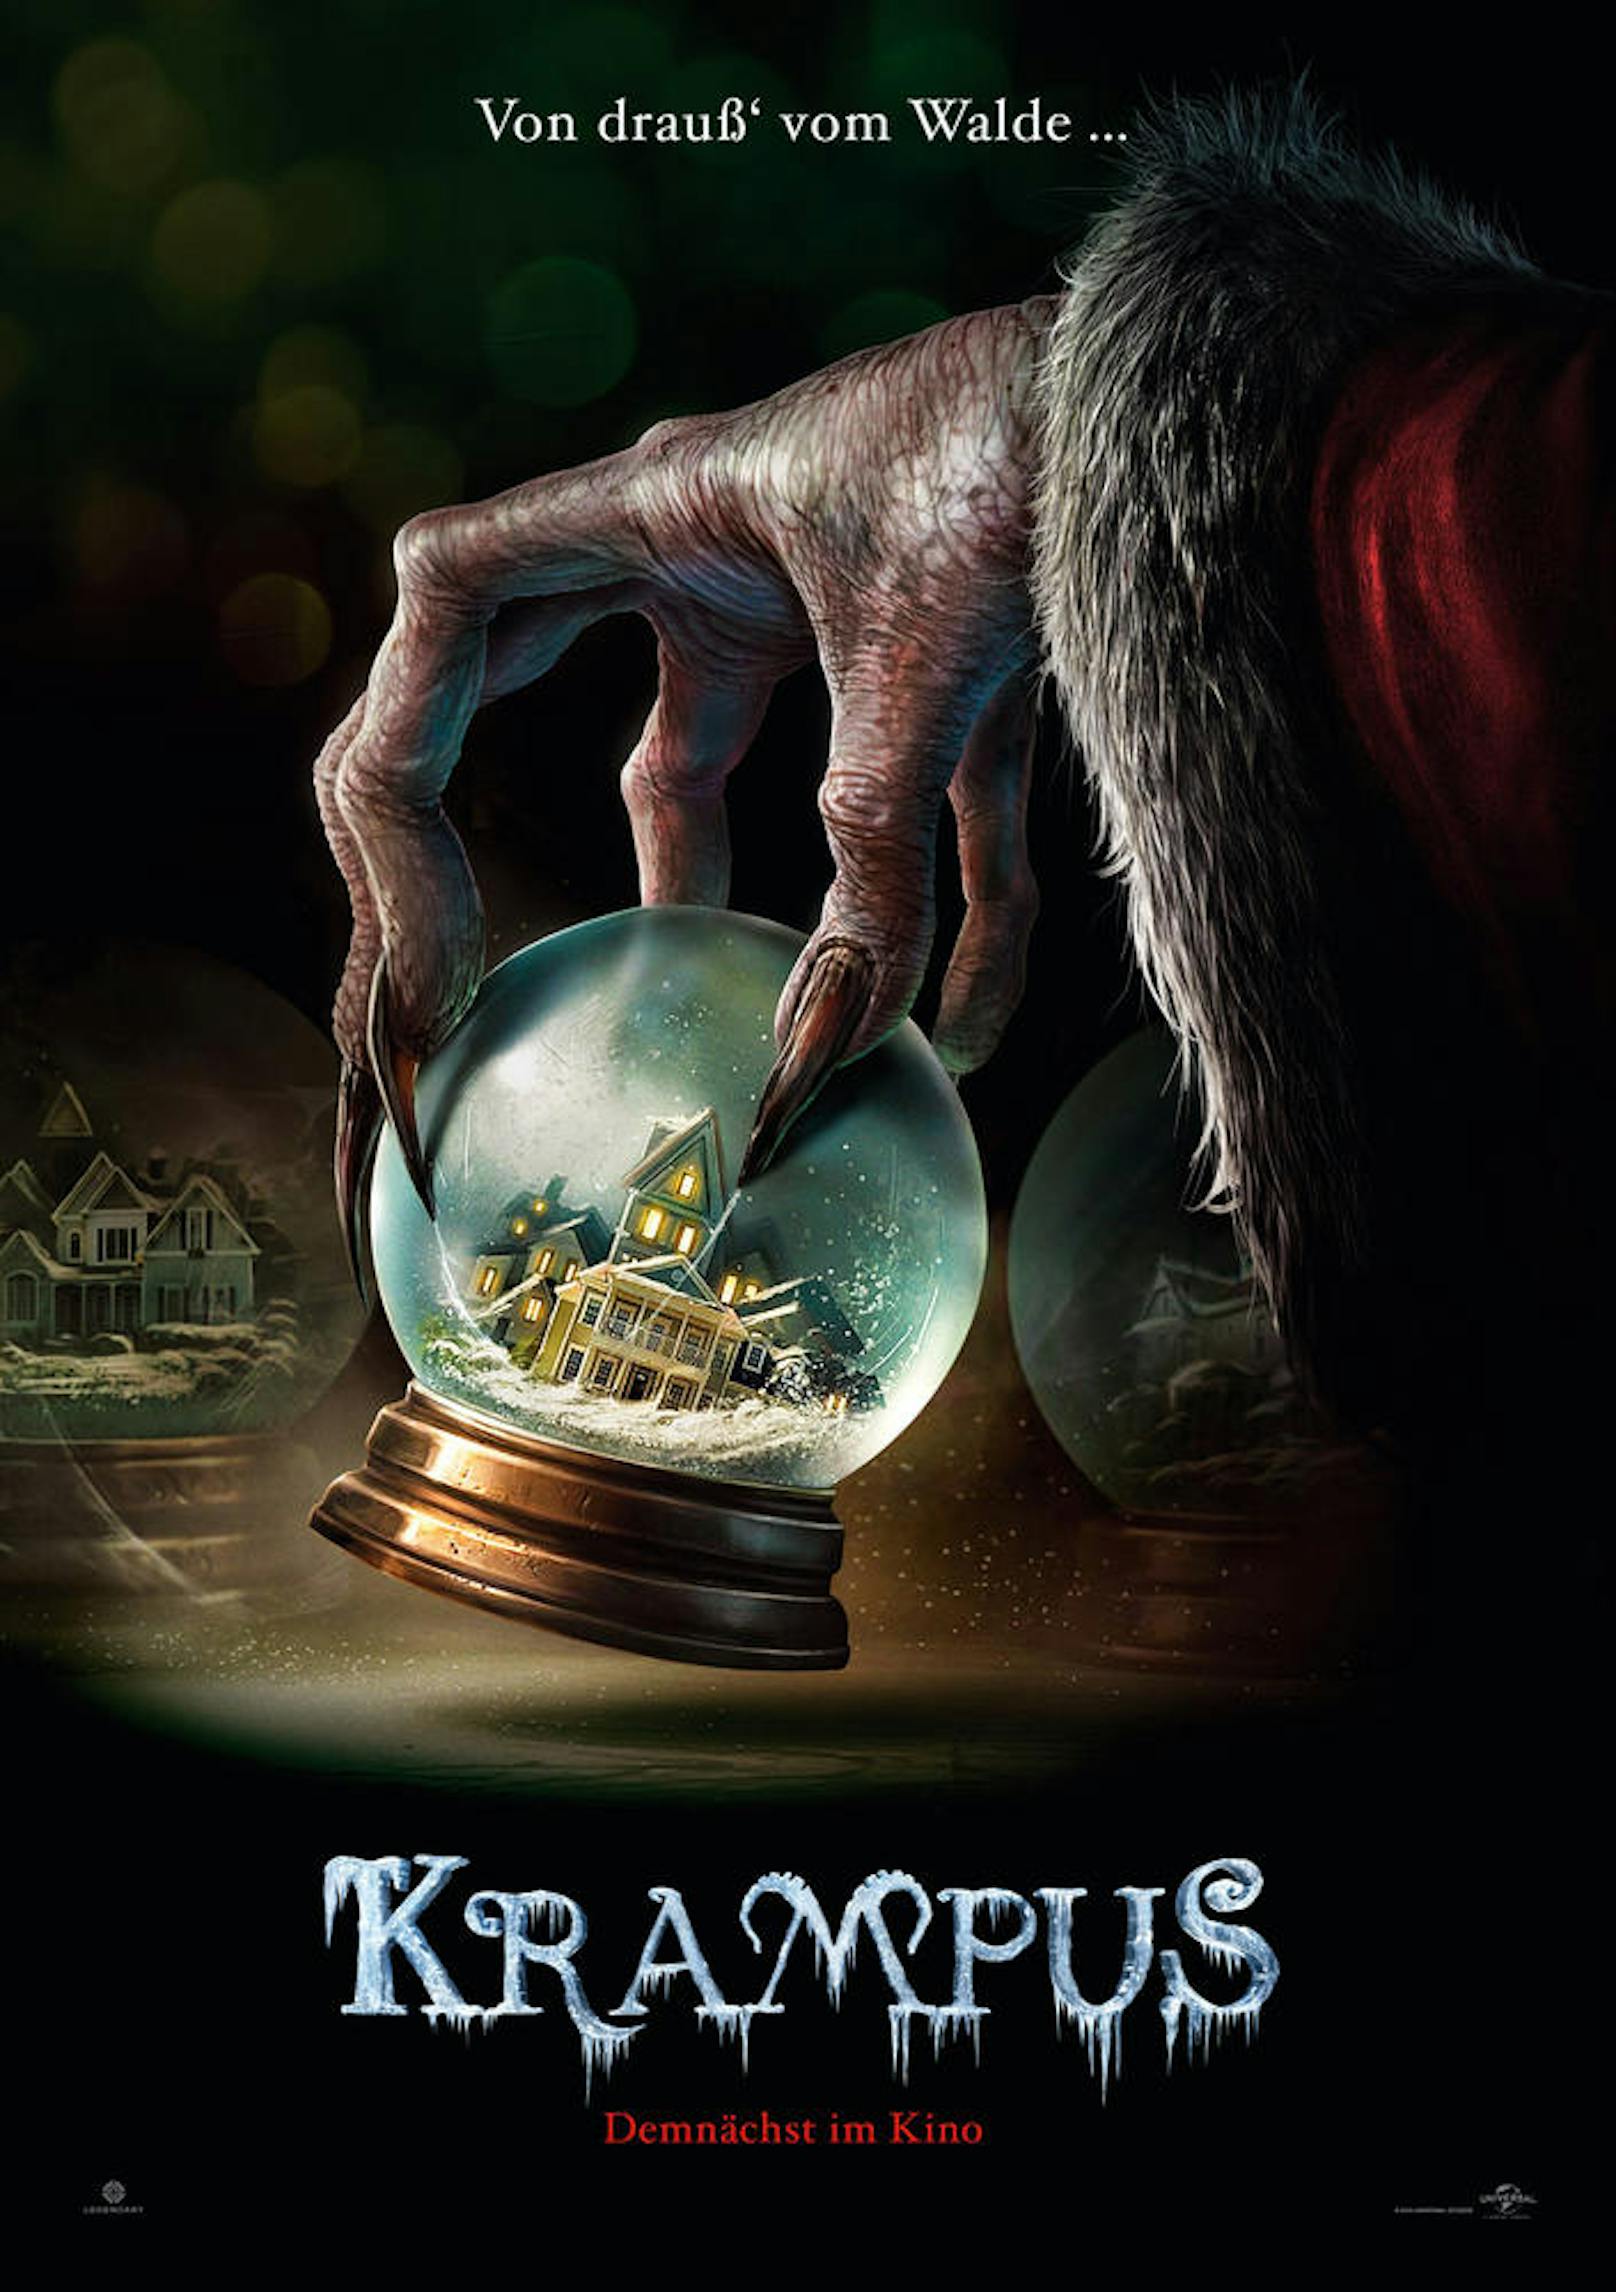 22.25 Uhr, VOX: "Krampus". US-Horrorkomödie (2015) über eine Familie, die vom furchterregenden Krampus heimgesucht wird. Mit Toni Collette und Adam Scott.